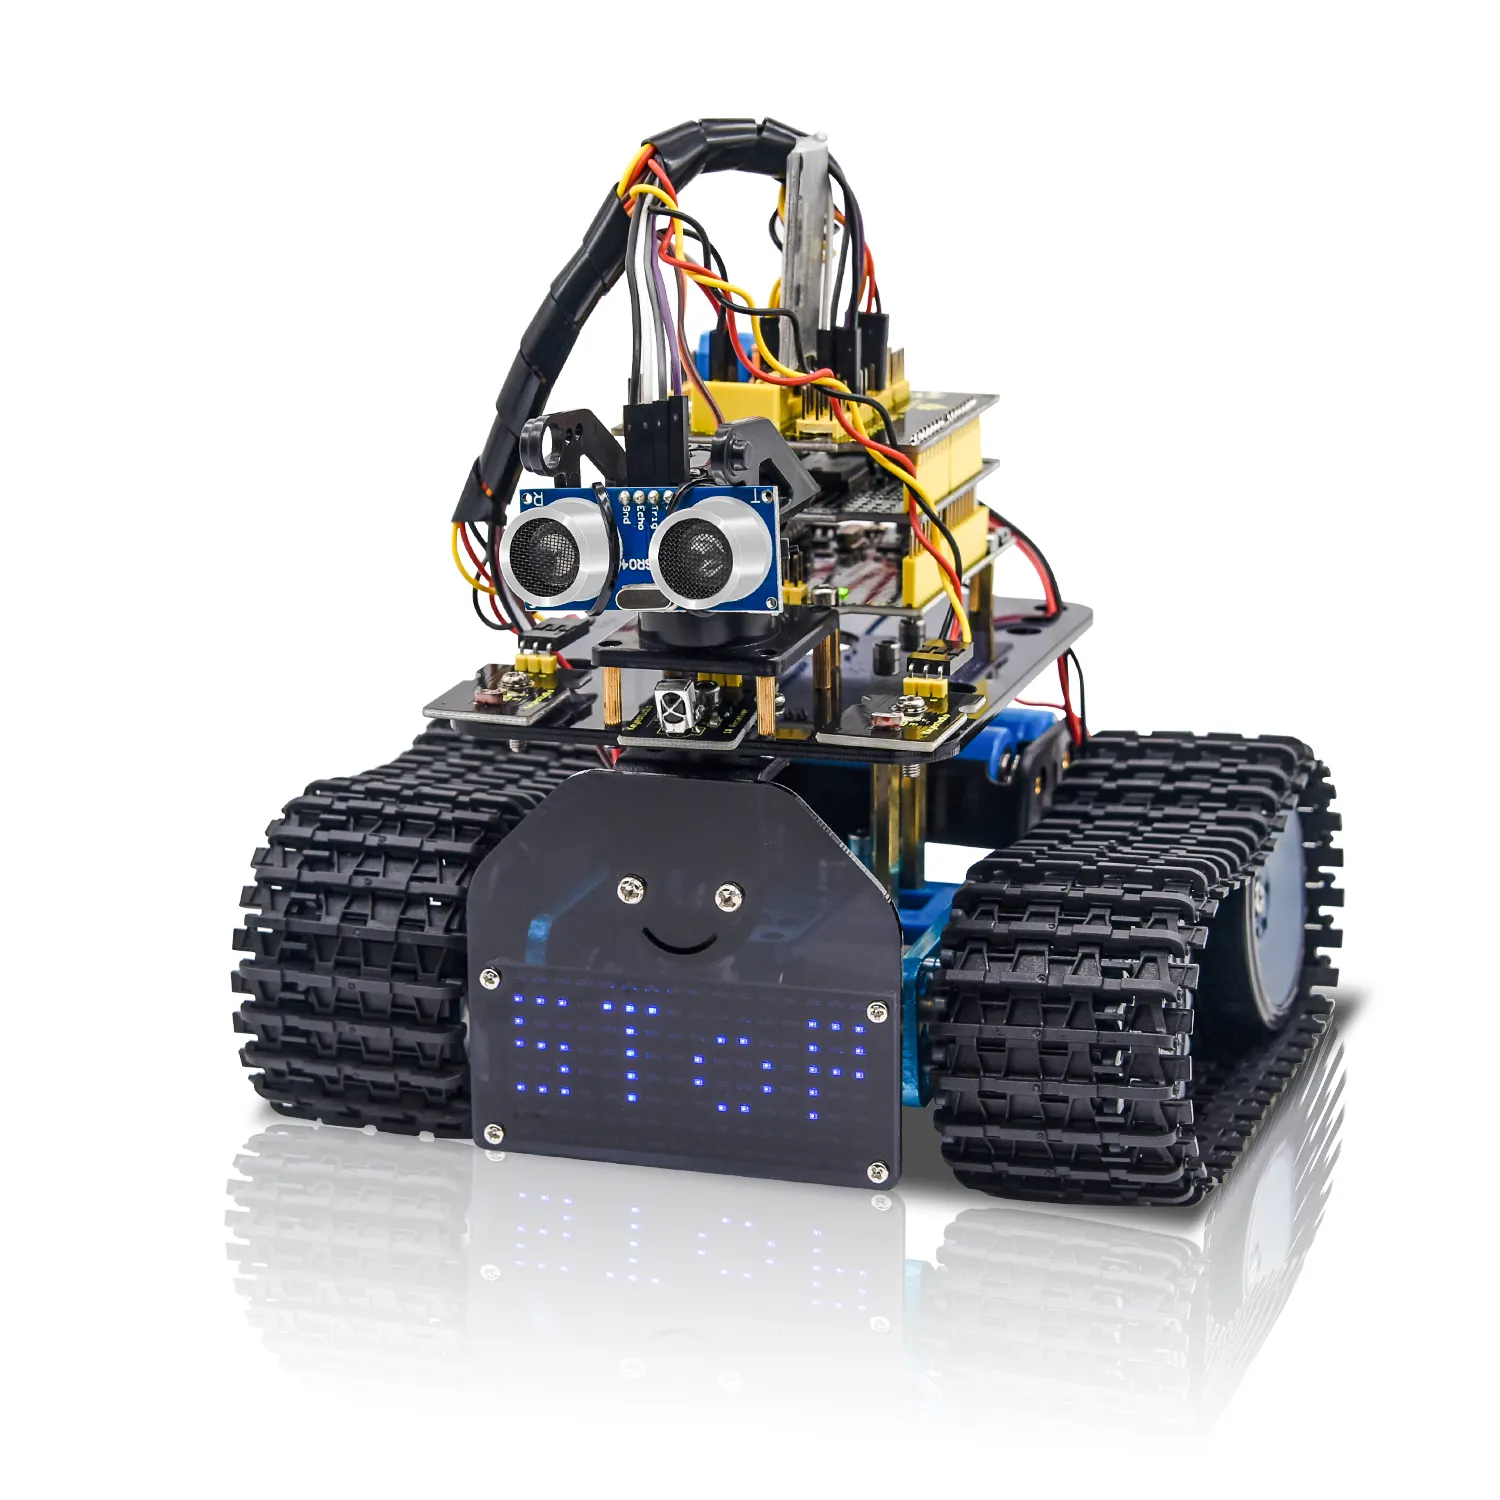 OEM Keyestudio DIY Mini Tank V2.0 Smart BT Robot Car Kit stem robot kit per Arduino